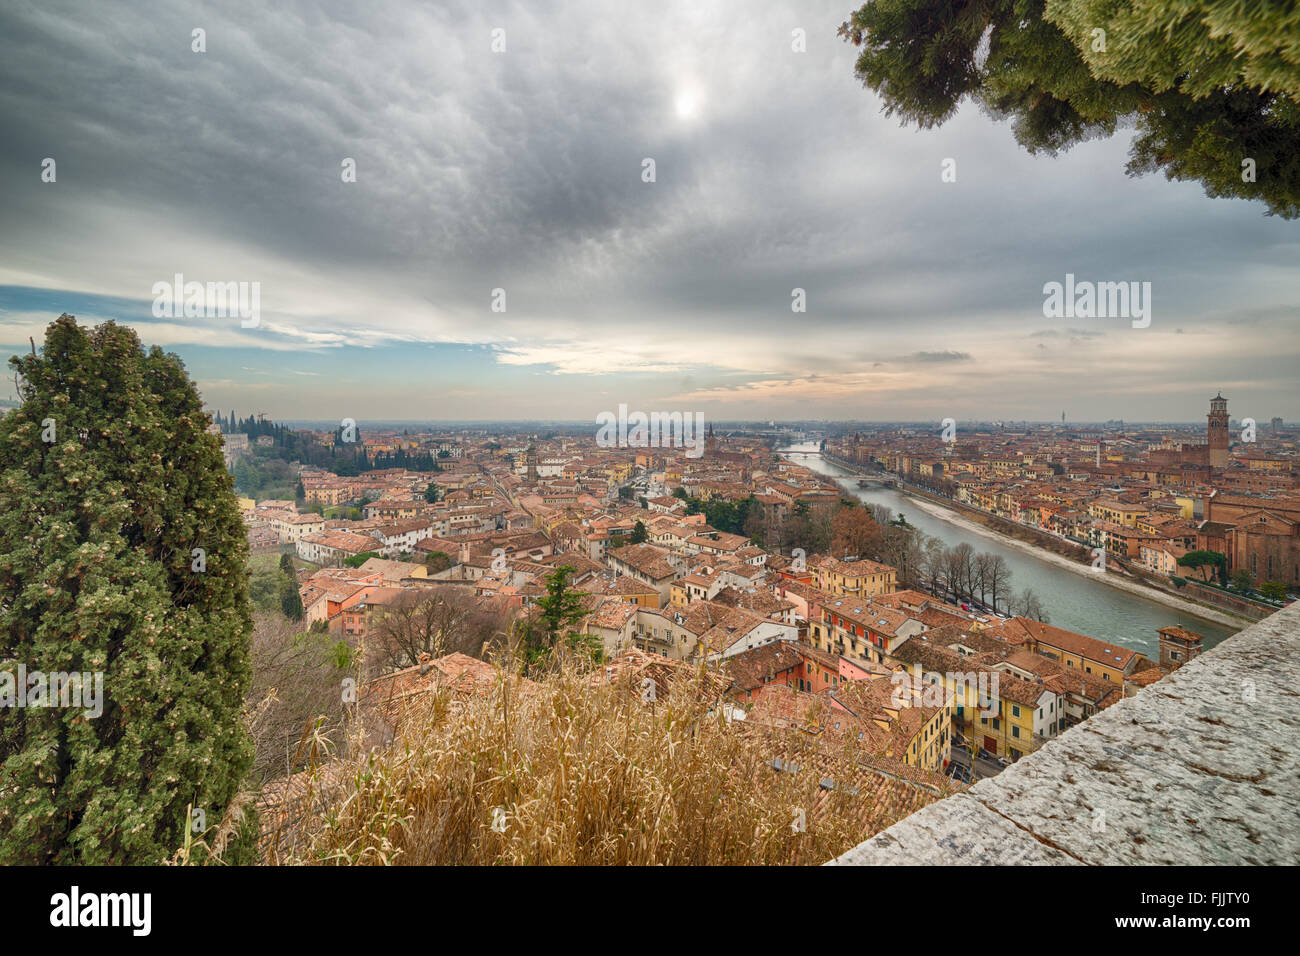 the Italian city of Love, Verona behind trees Stock Photo